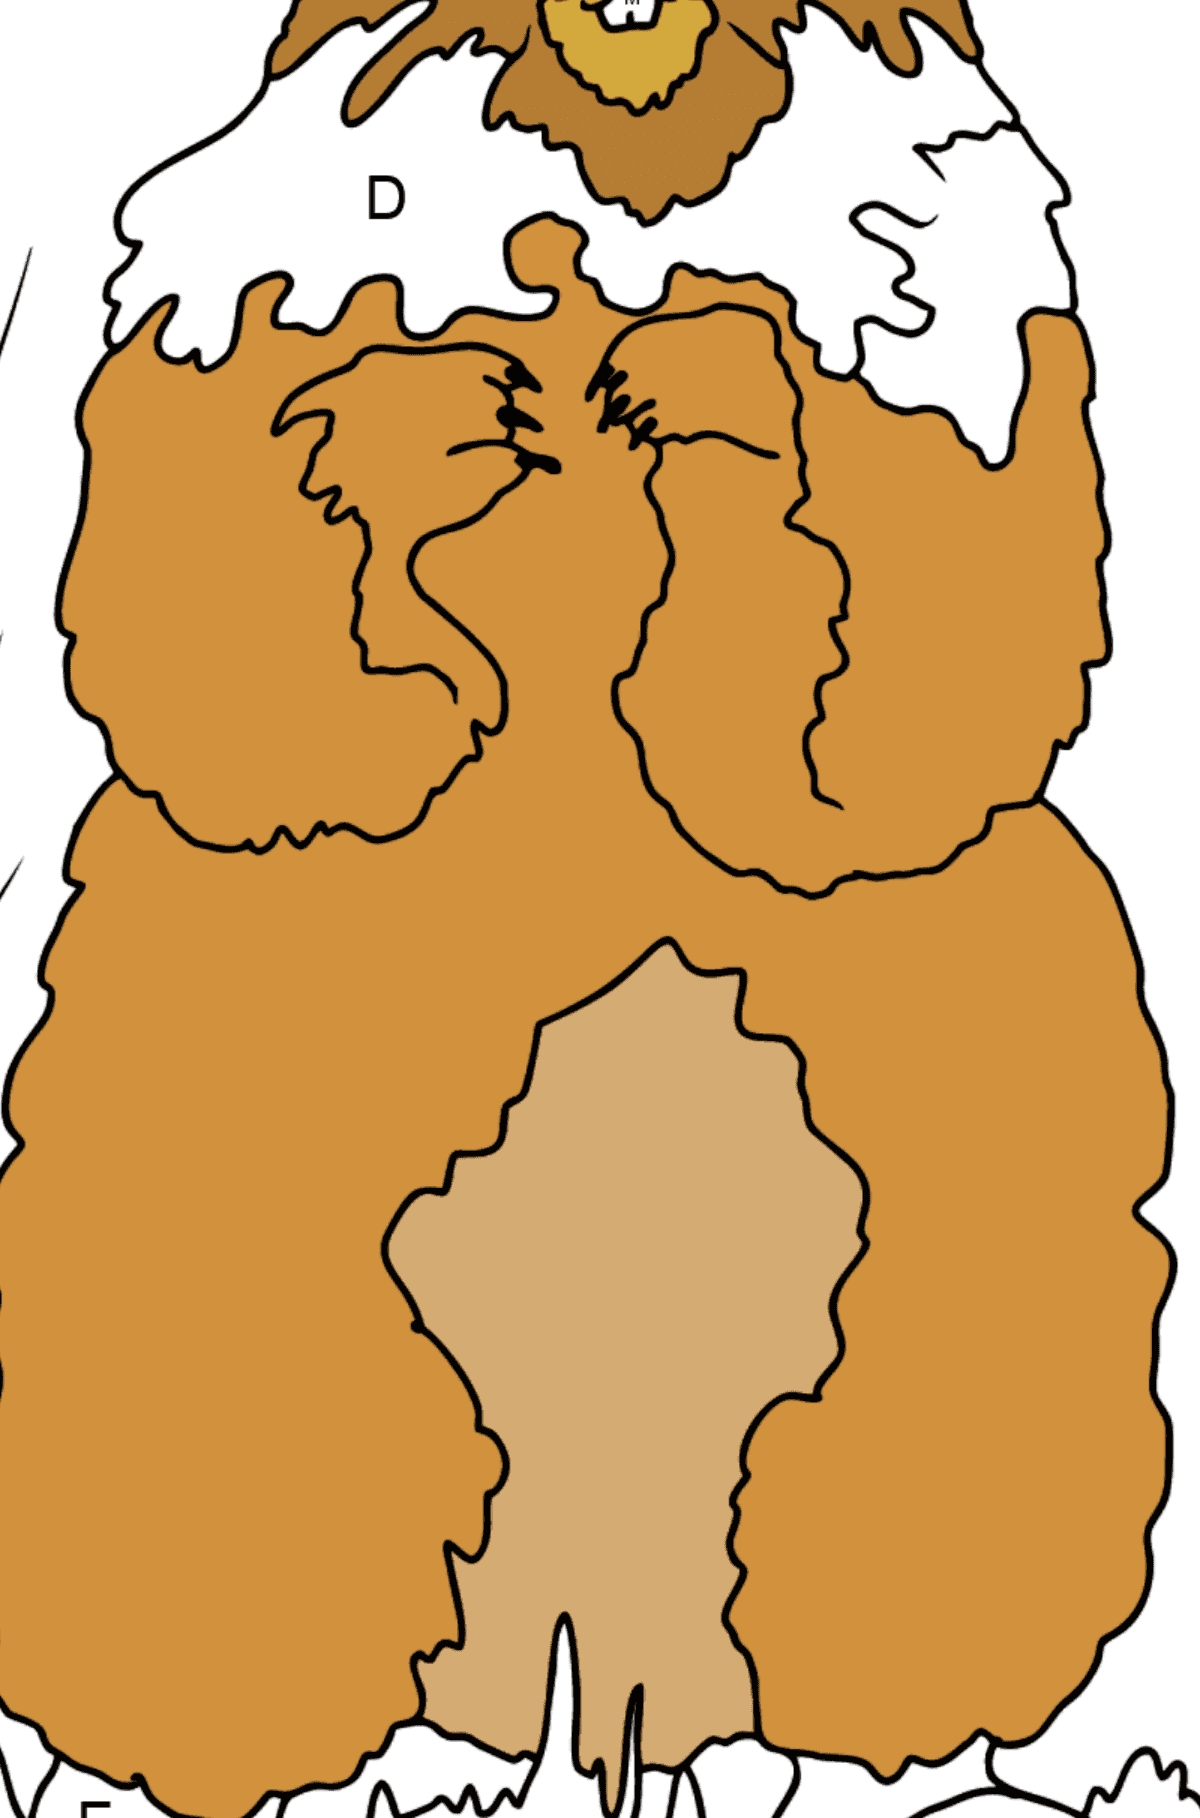 Coloriage - Une marmotte qui regarde autour - Coloriage par Lettres pour les Enfants